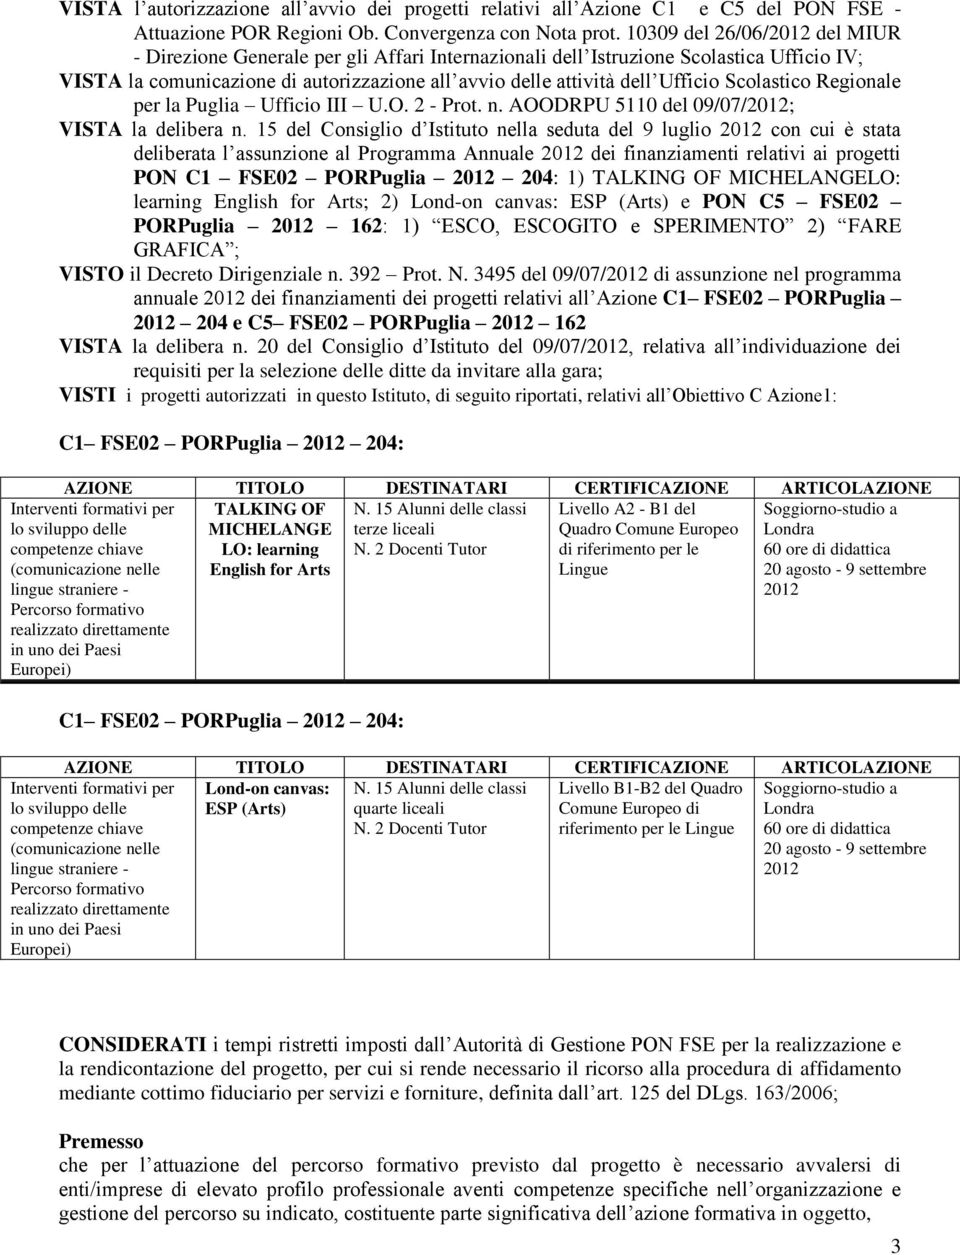 Scolastico Regionale per la Puglia Ufficio III U.O. 2 - Prot. n. AOODRPU 5110 del 09/07/2012; VISTA la delibera n.